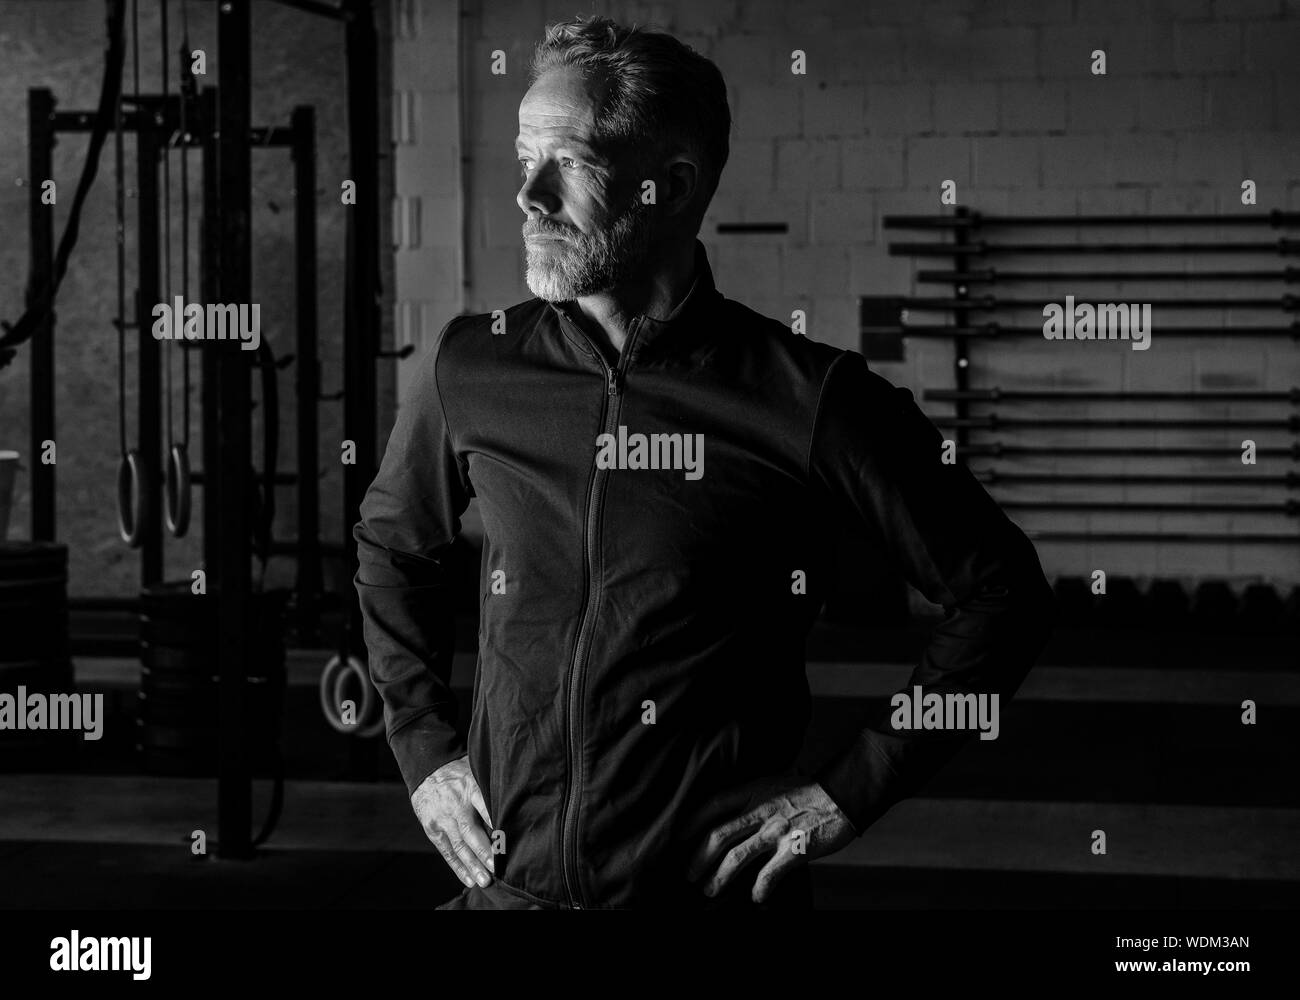 Porträt eines attraktiven passen im mittleren Alter Mann in einem Fitness Studio. Bärtige grauhaariger Mann mit schwarzen Sweatshirt Jacke ist der Blick in die Ferne. Stockfoto